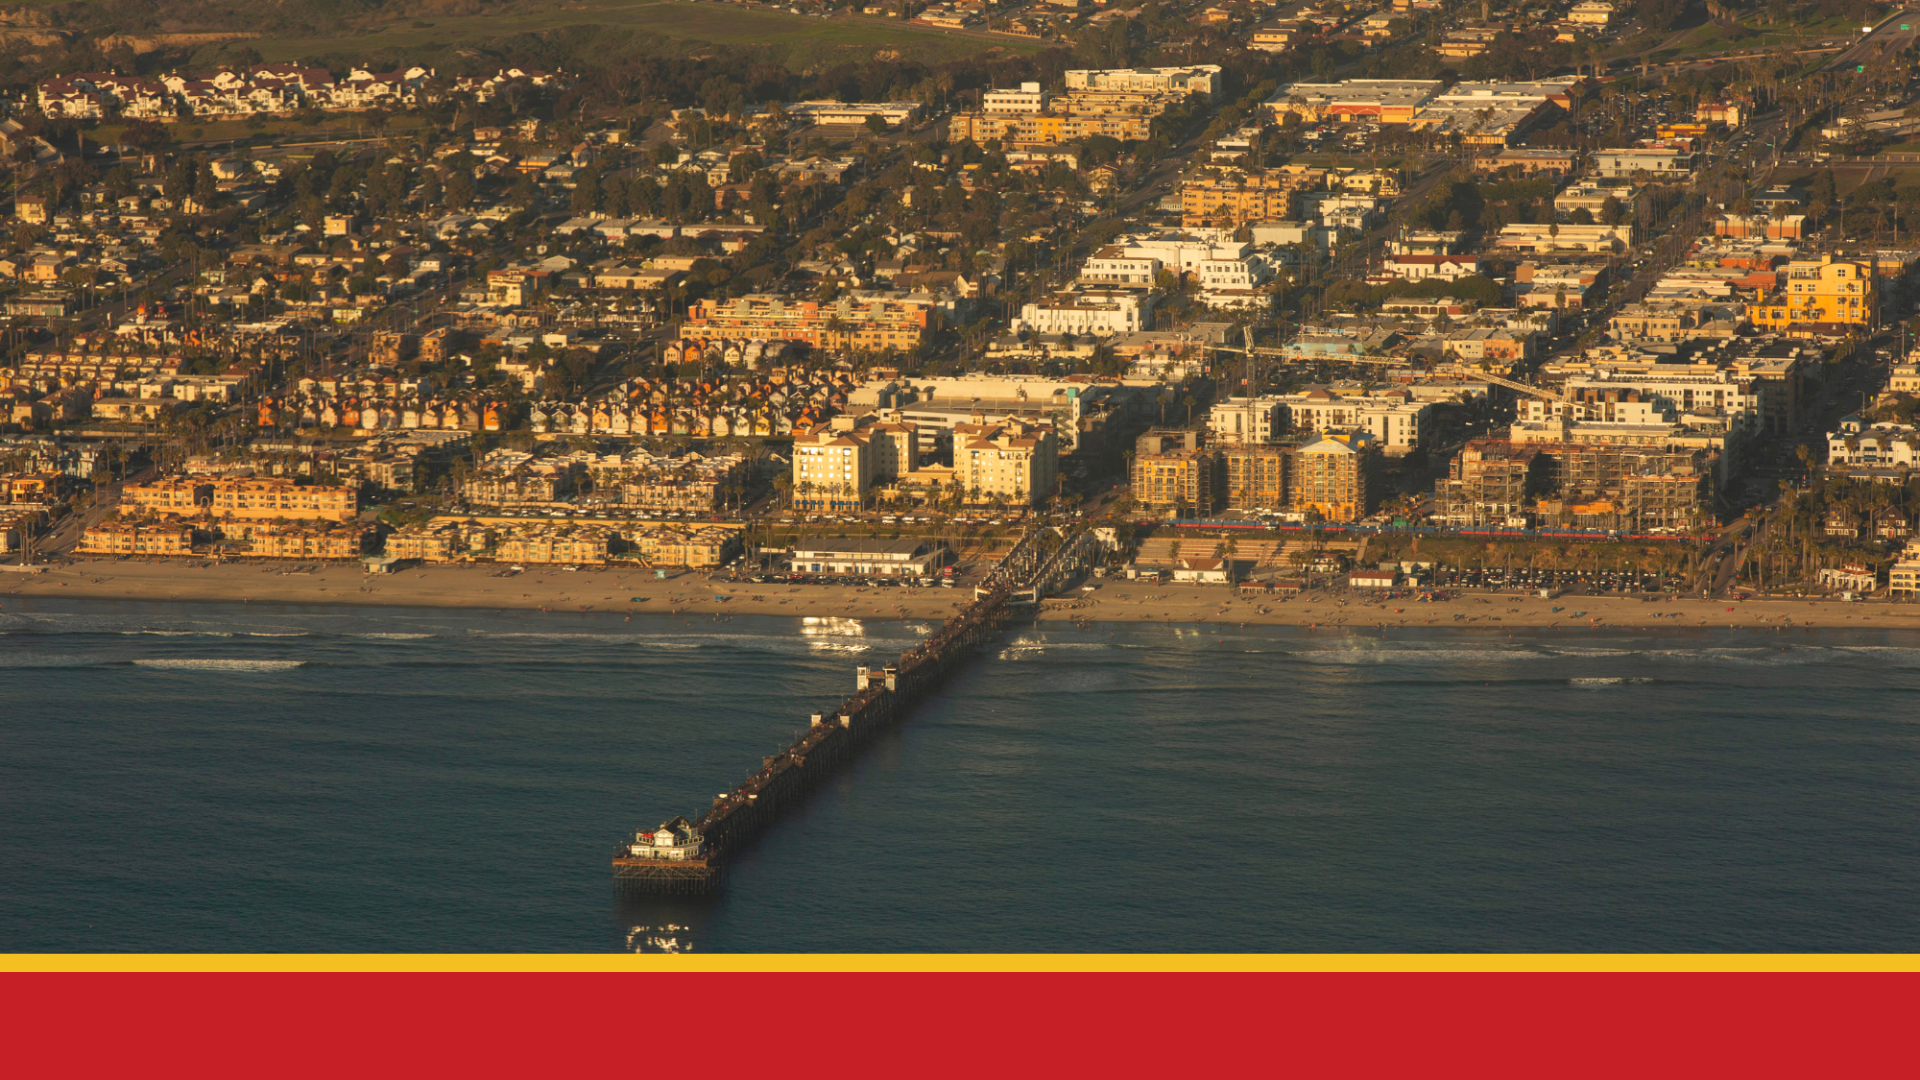 Aerial image of pier in Oceanside, California